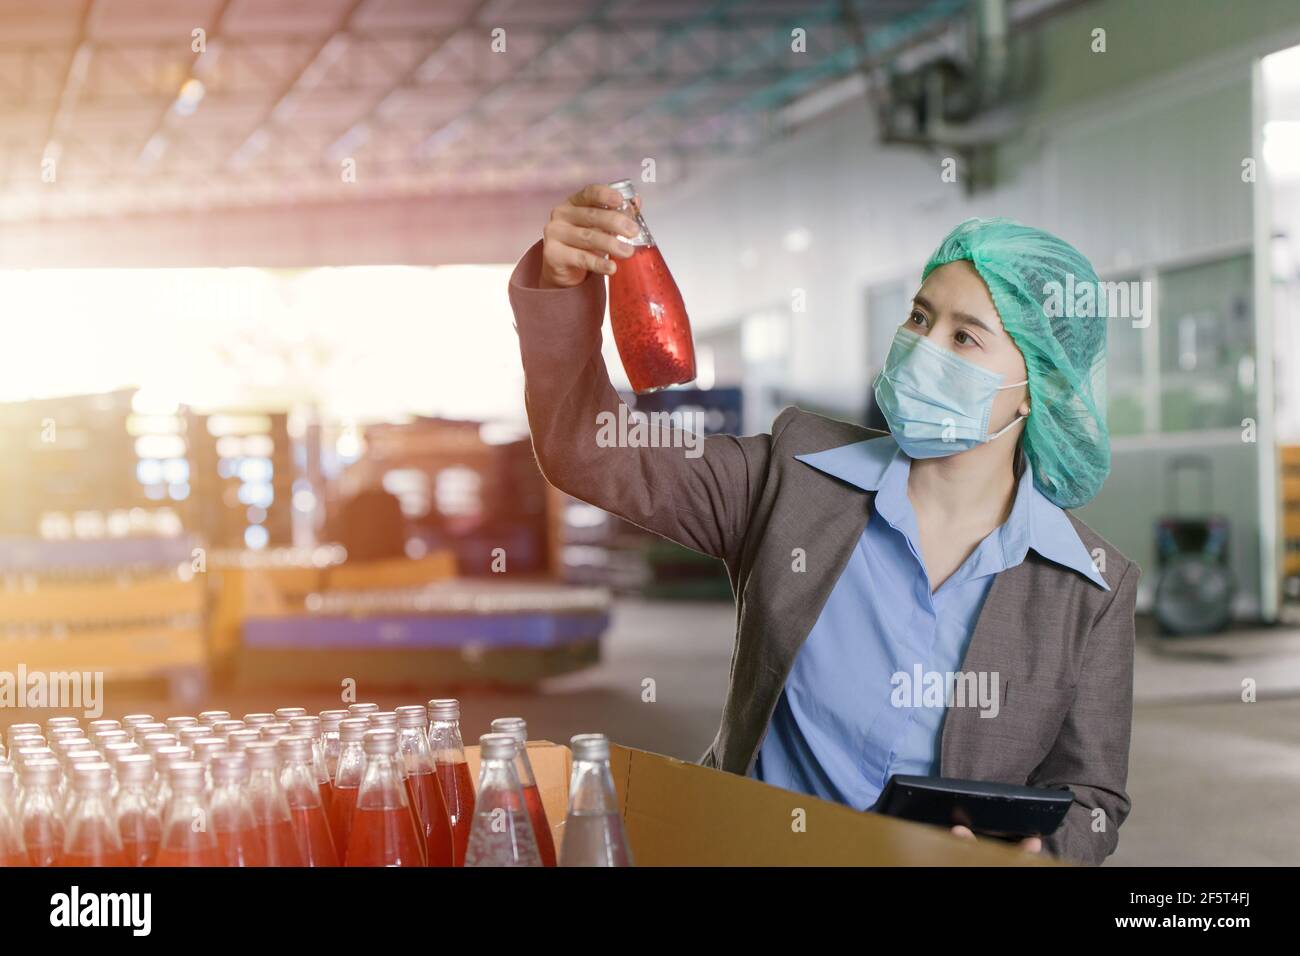 Qualitätskontrolle Inspektor Person arbeitet in der Getränkfabrik stichprobenartig zu überprüfen verunreinigen die Endprodukte. Stockfoto